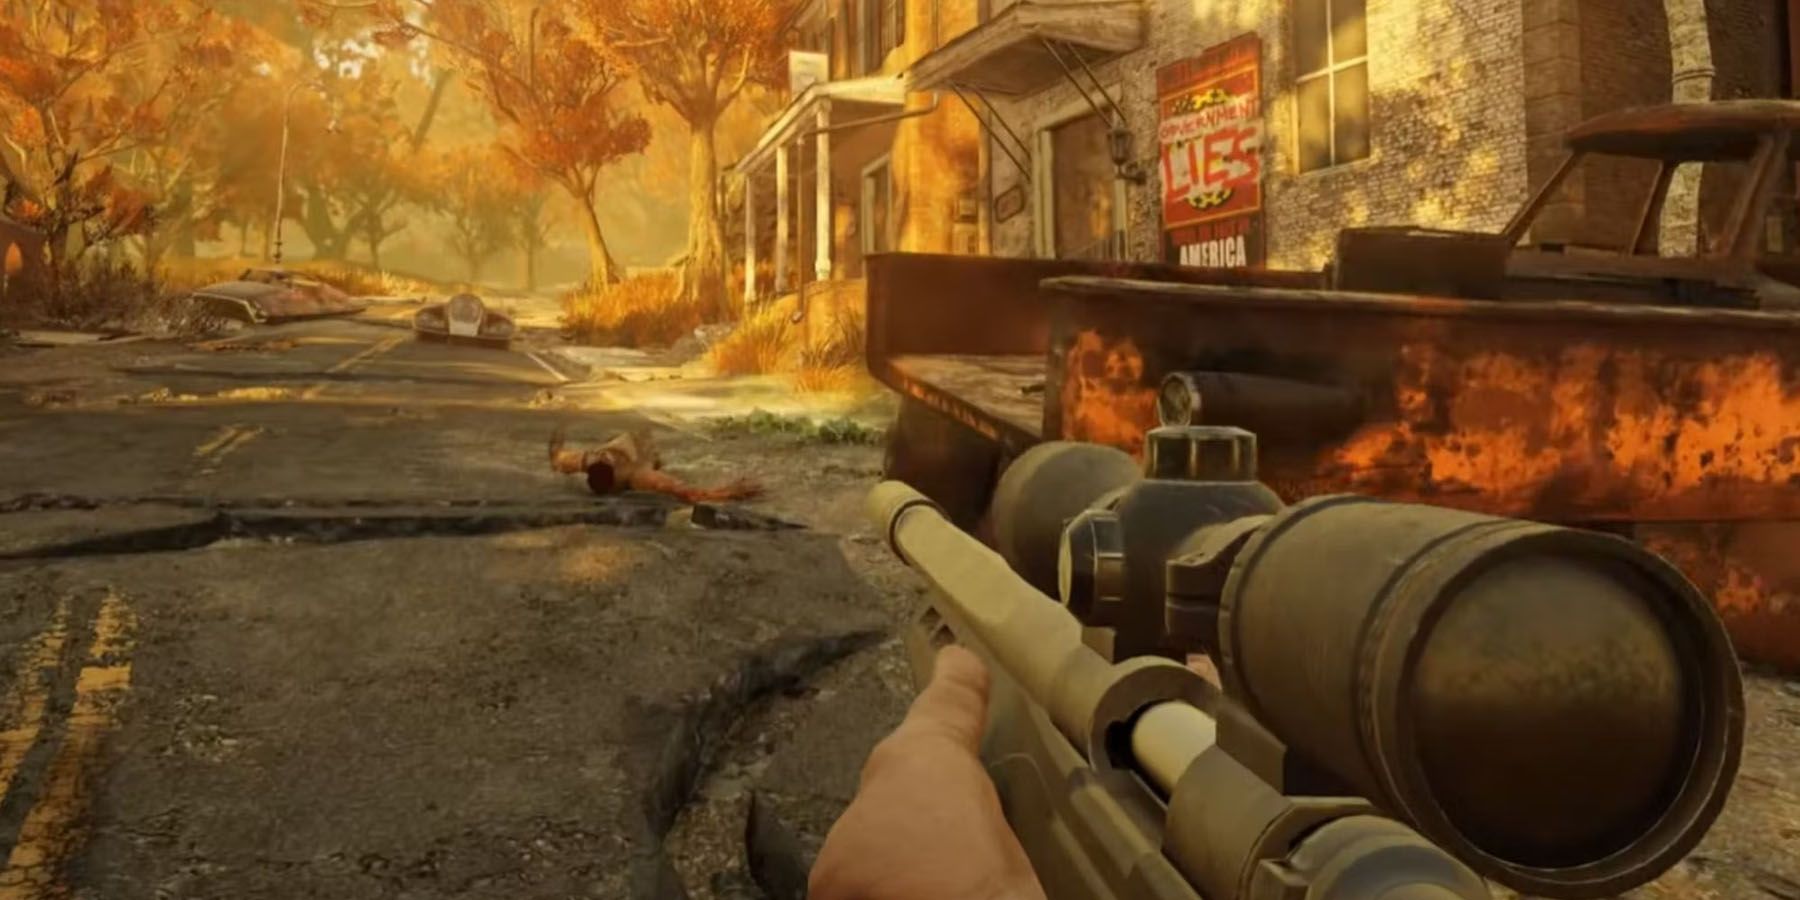 A sniper in Fallout 76